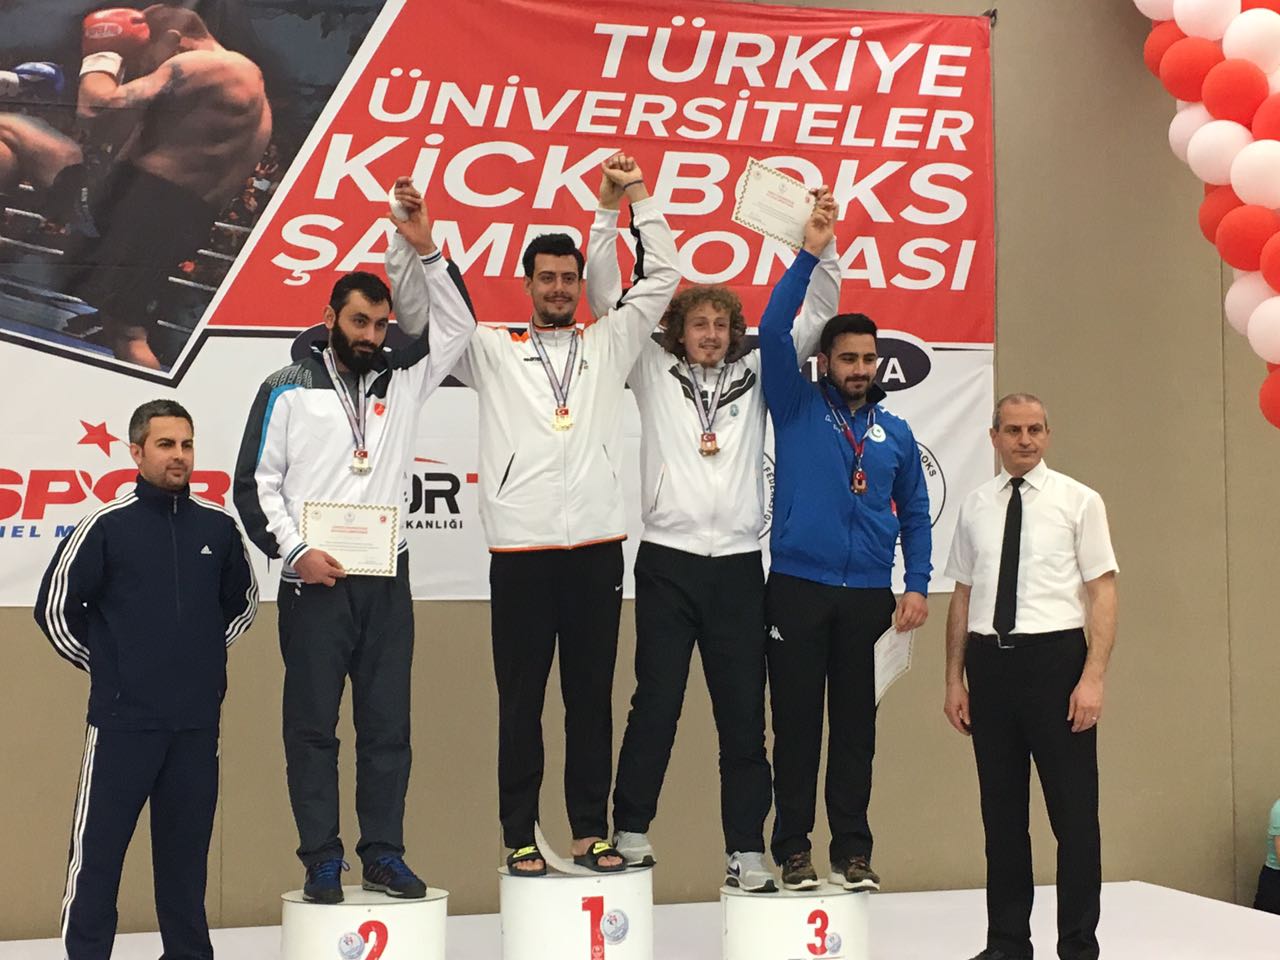 Gazete ETÜ; Üniversitelerarası Kick Boks Şampiyonu, Siyaset Bilimi Bölümü Öğrencisi Aygün Gençay ile Sohbet Etti